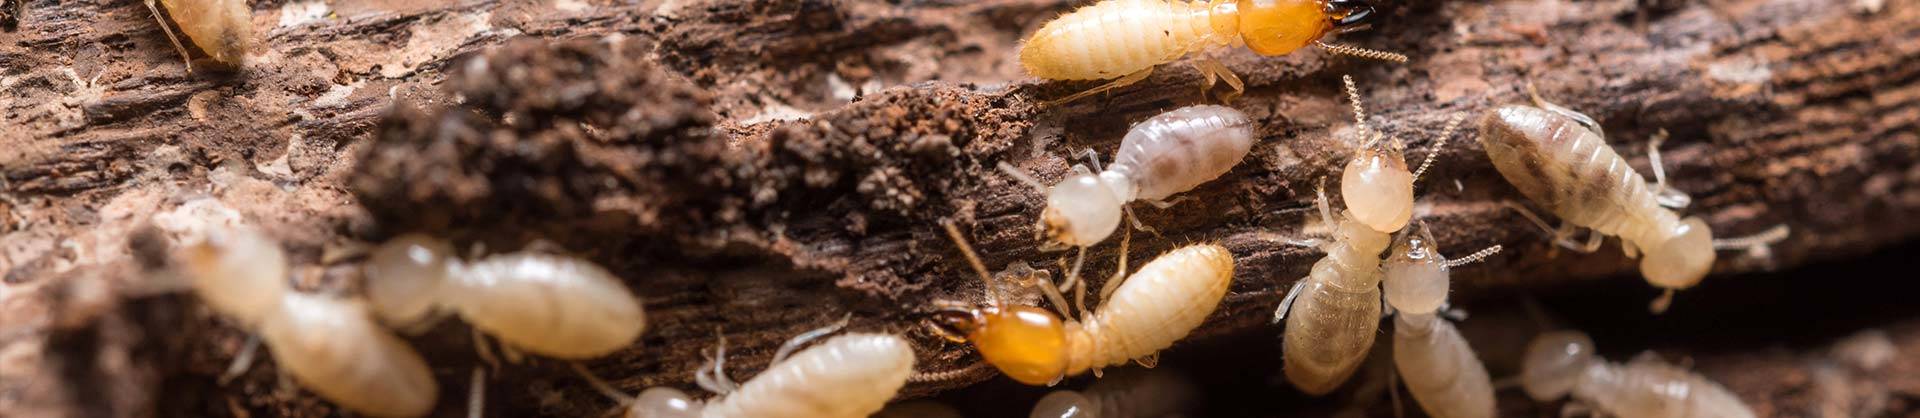 Newcastle Termite Inspections & Termite Control